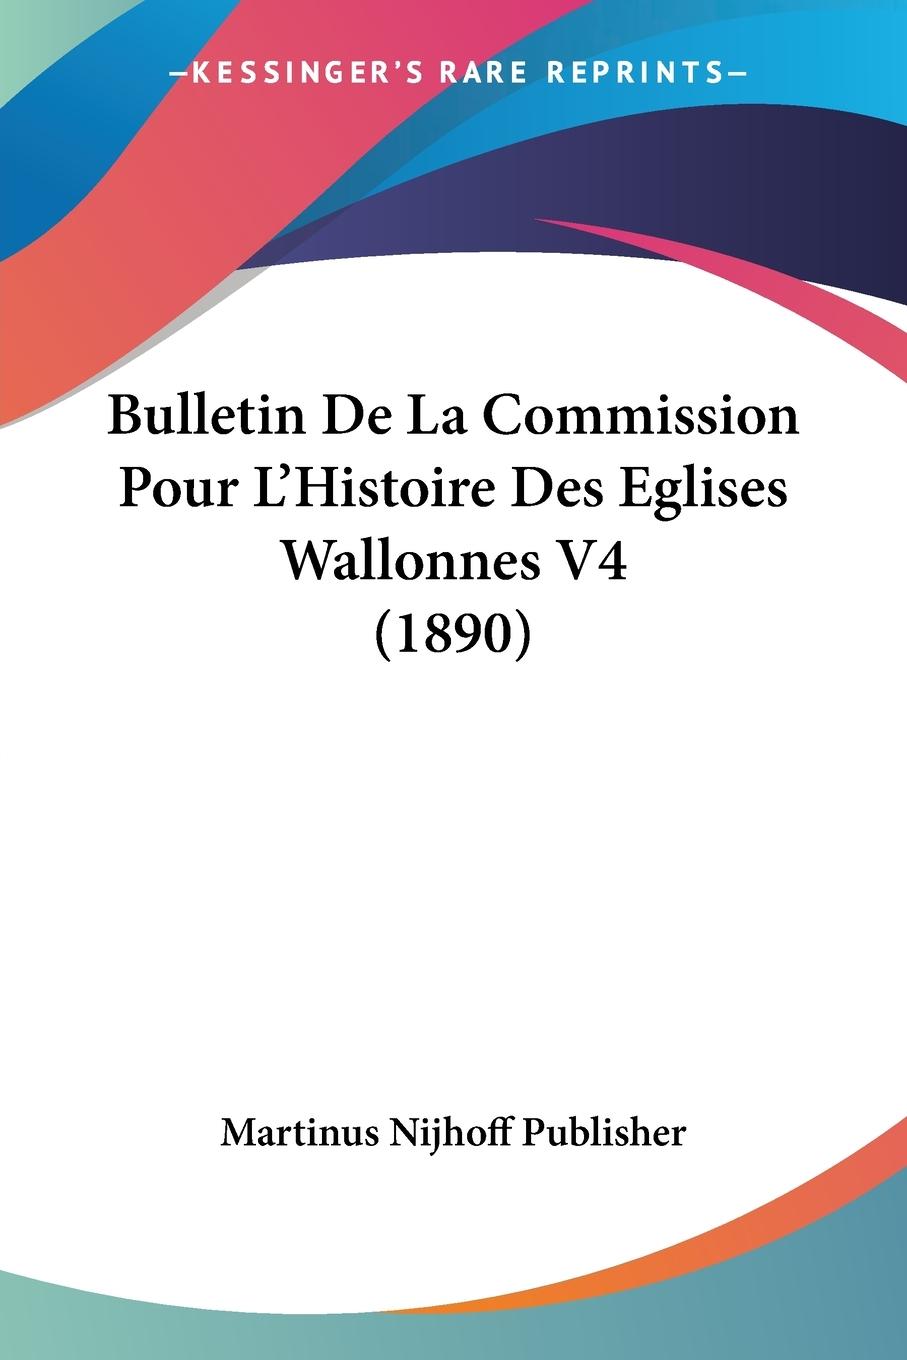 Bulletin De La Commission Pour L Histoire Des Eglises Wallonnes V4 (1890) - Martinus Nijhoff Publisher